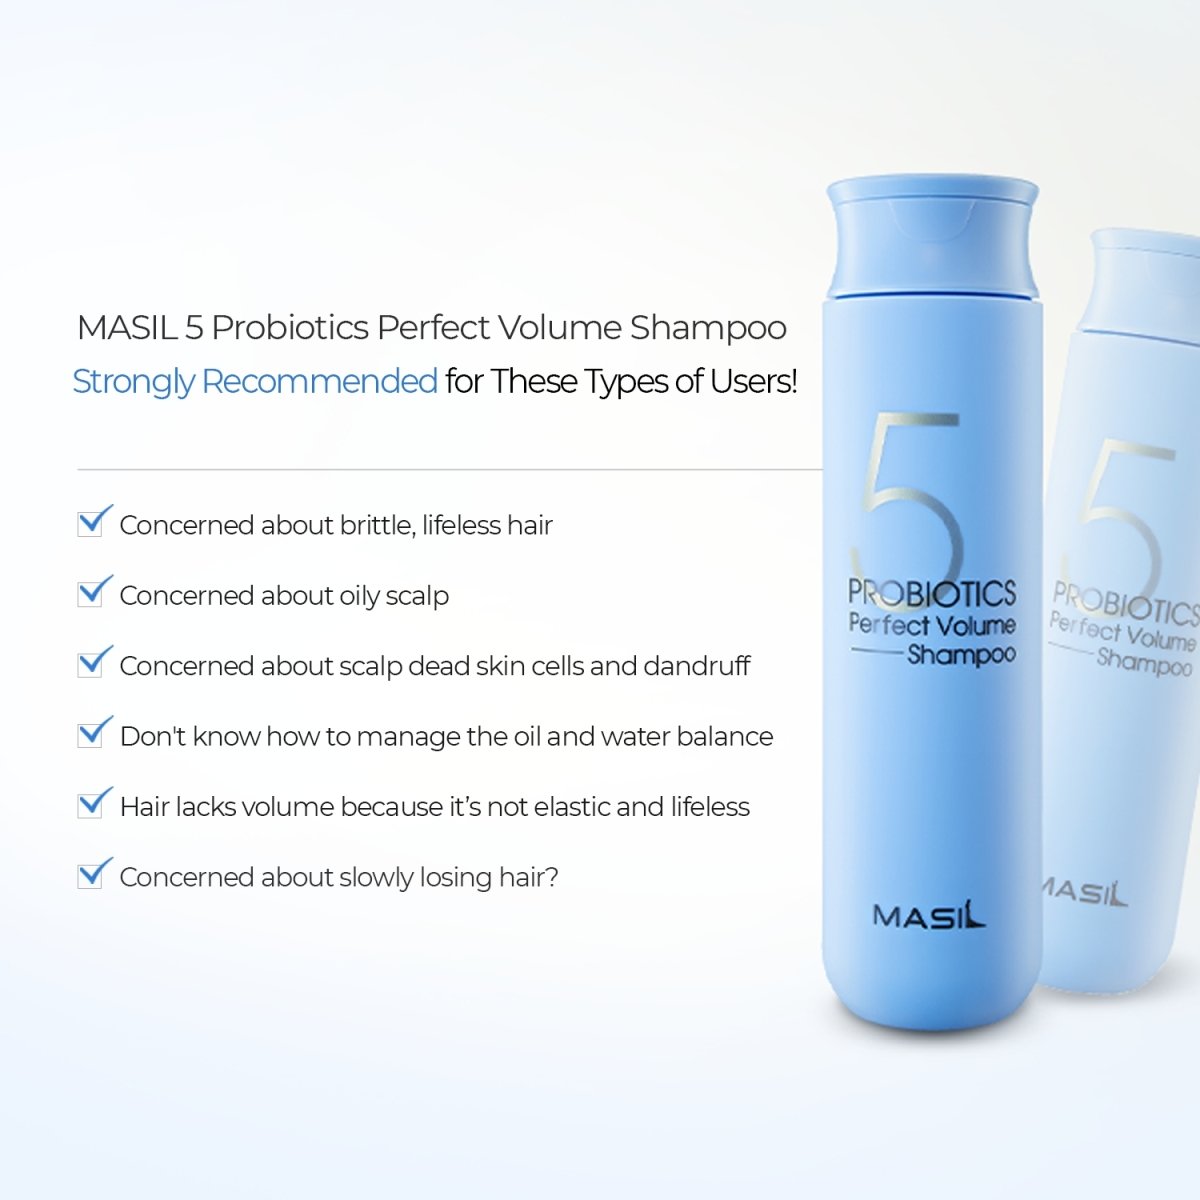 MASIL - Probiotics Perfect Volume Shampoo - Stellar K-Beauty